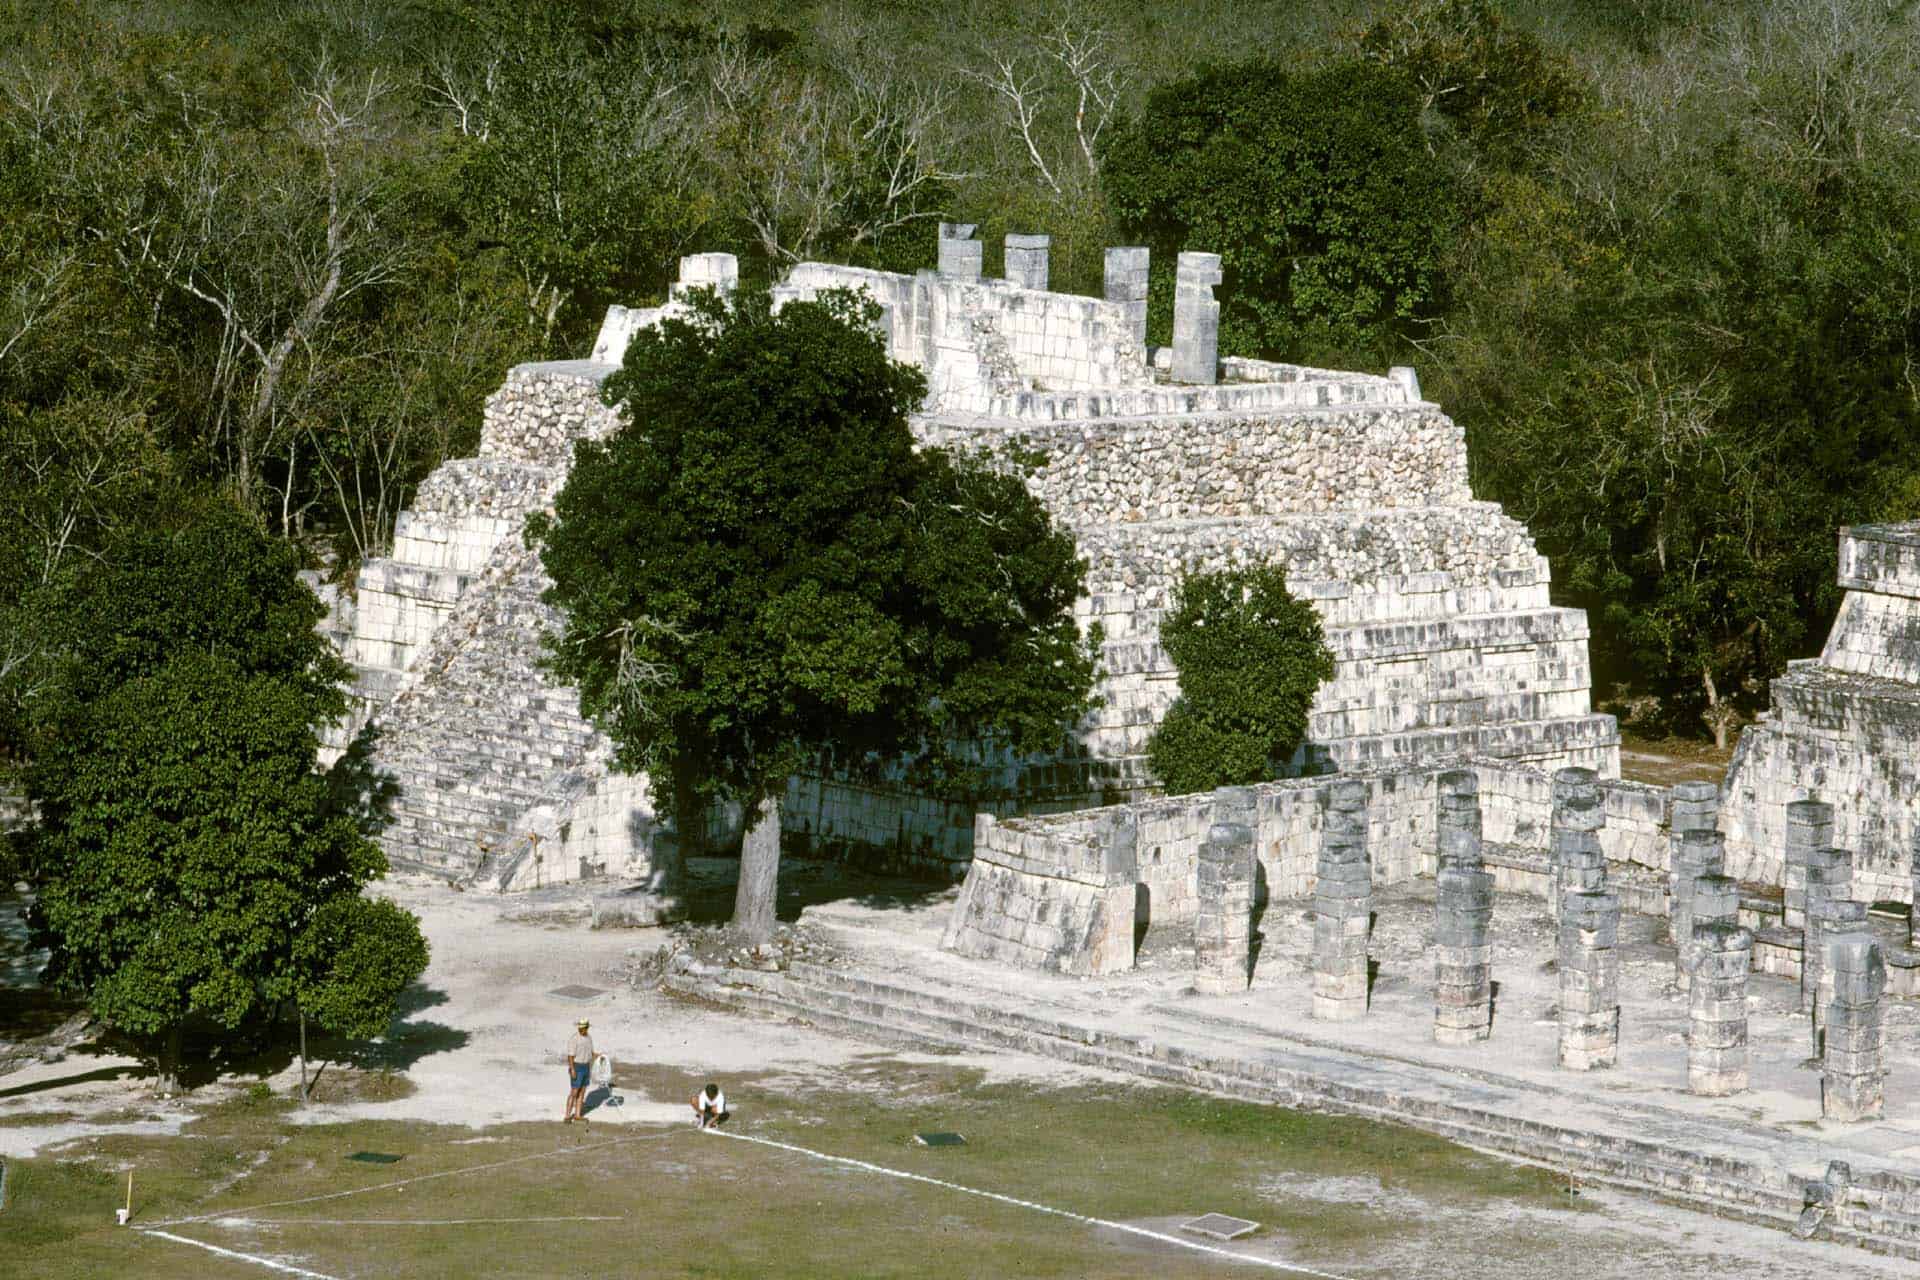 Zona arqueológica de Chichén Itzá, México - Templo de las Mesas